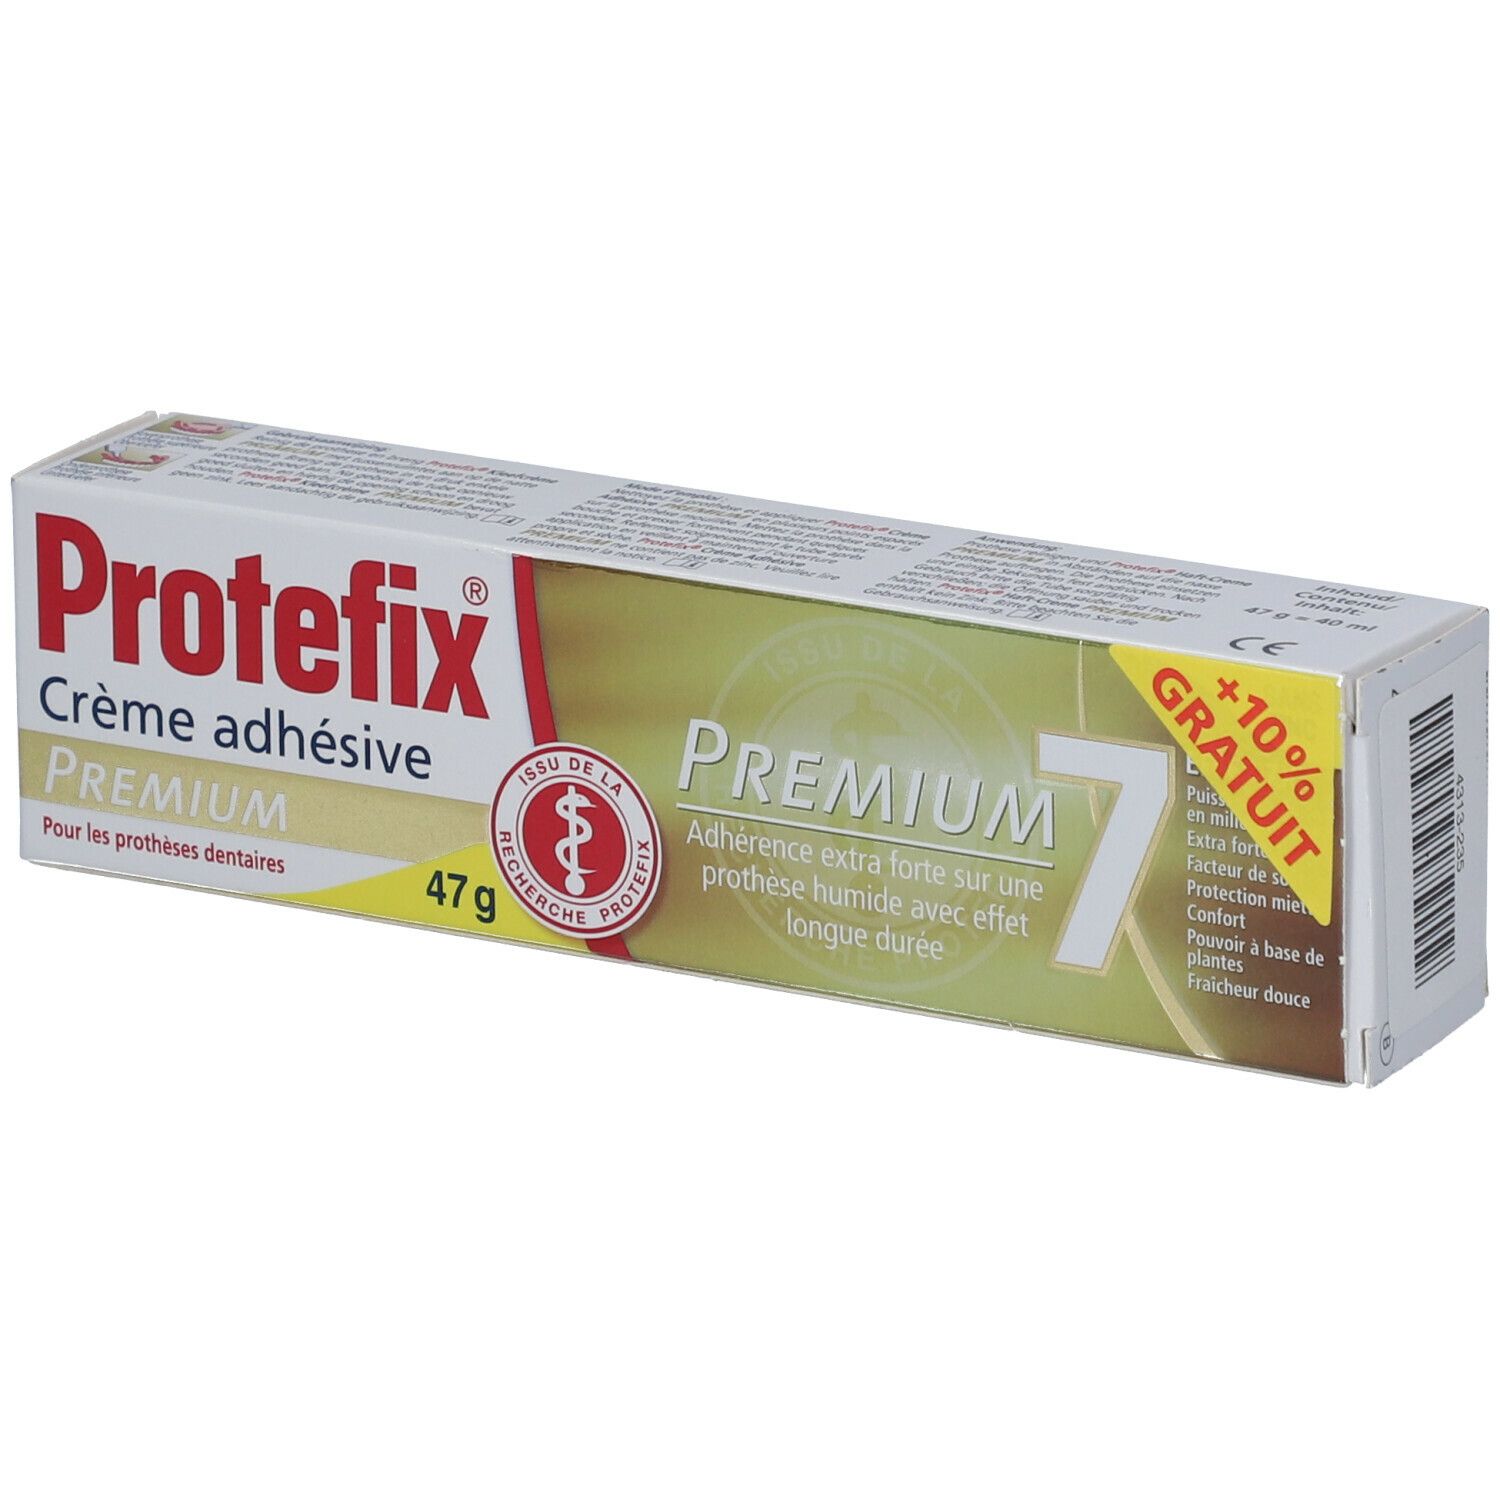 REVOGAN Protefix® Haft-Creme Premium + 4 ml Gratis Promo